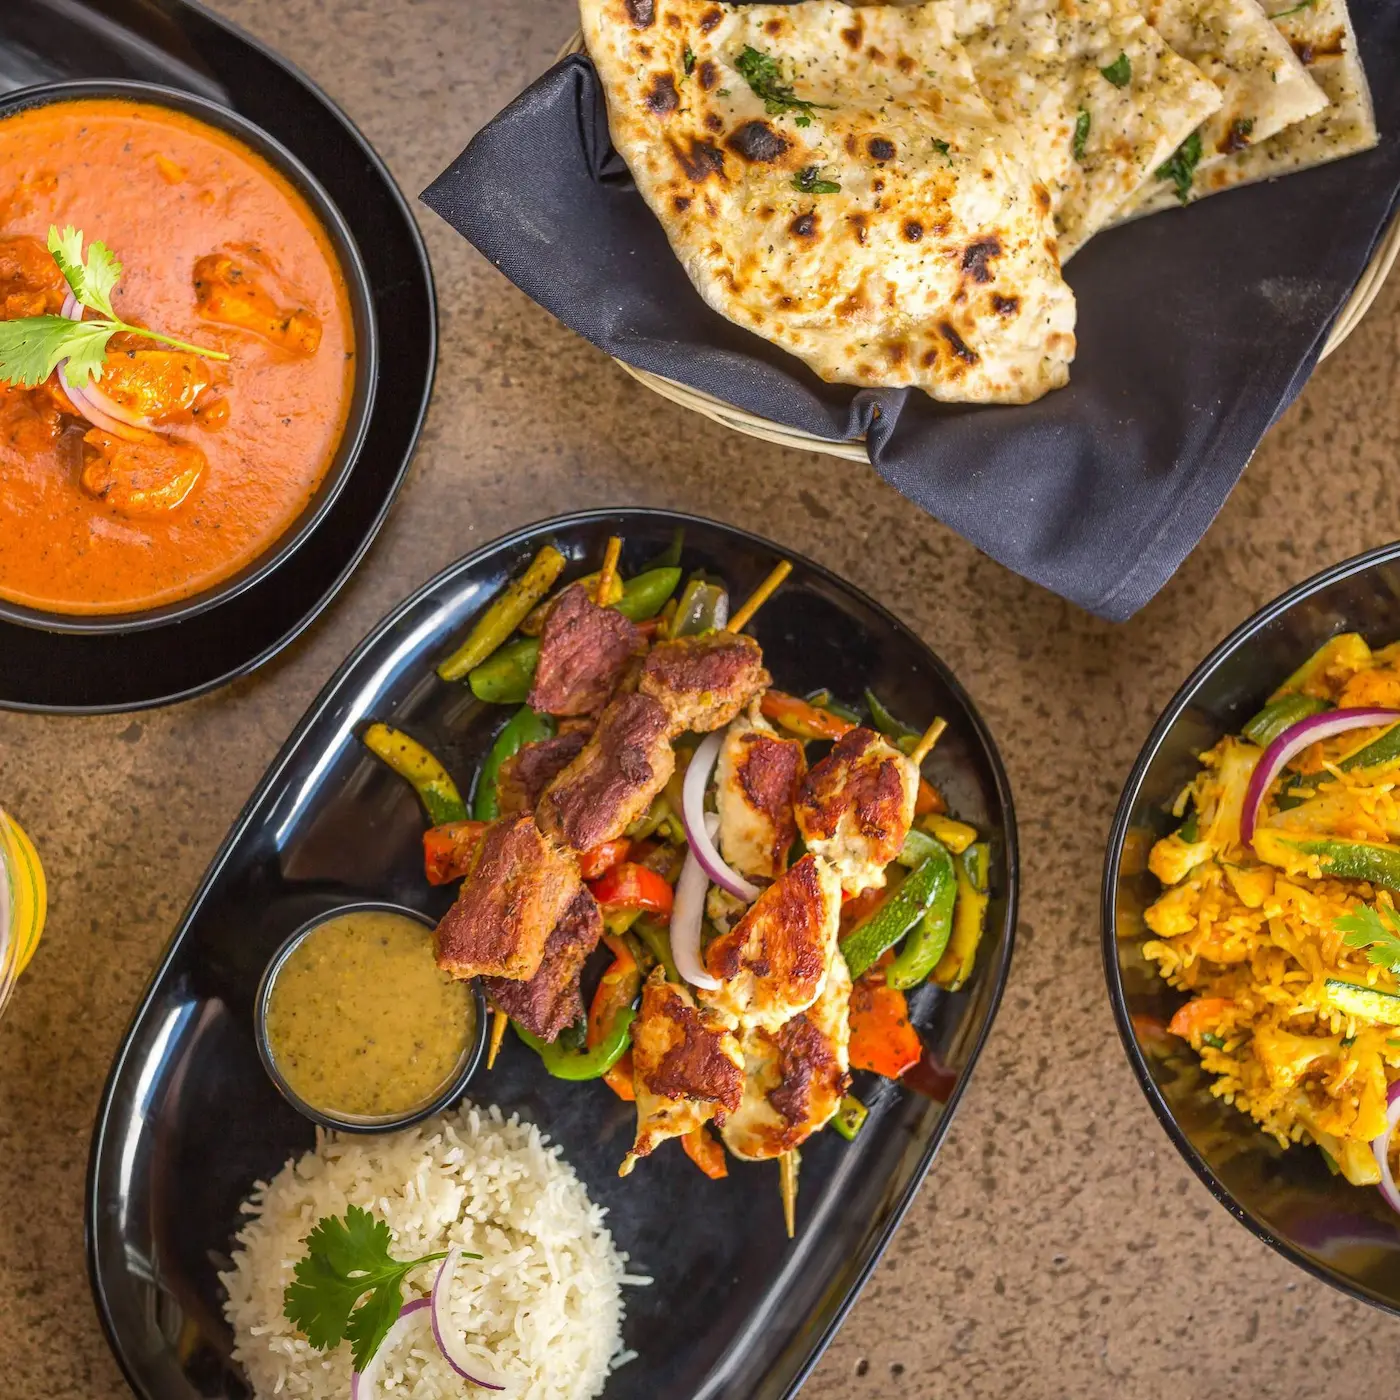 Tarka Indian Kitchen Customer Feedback